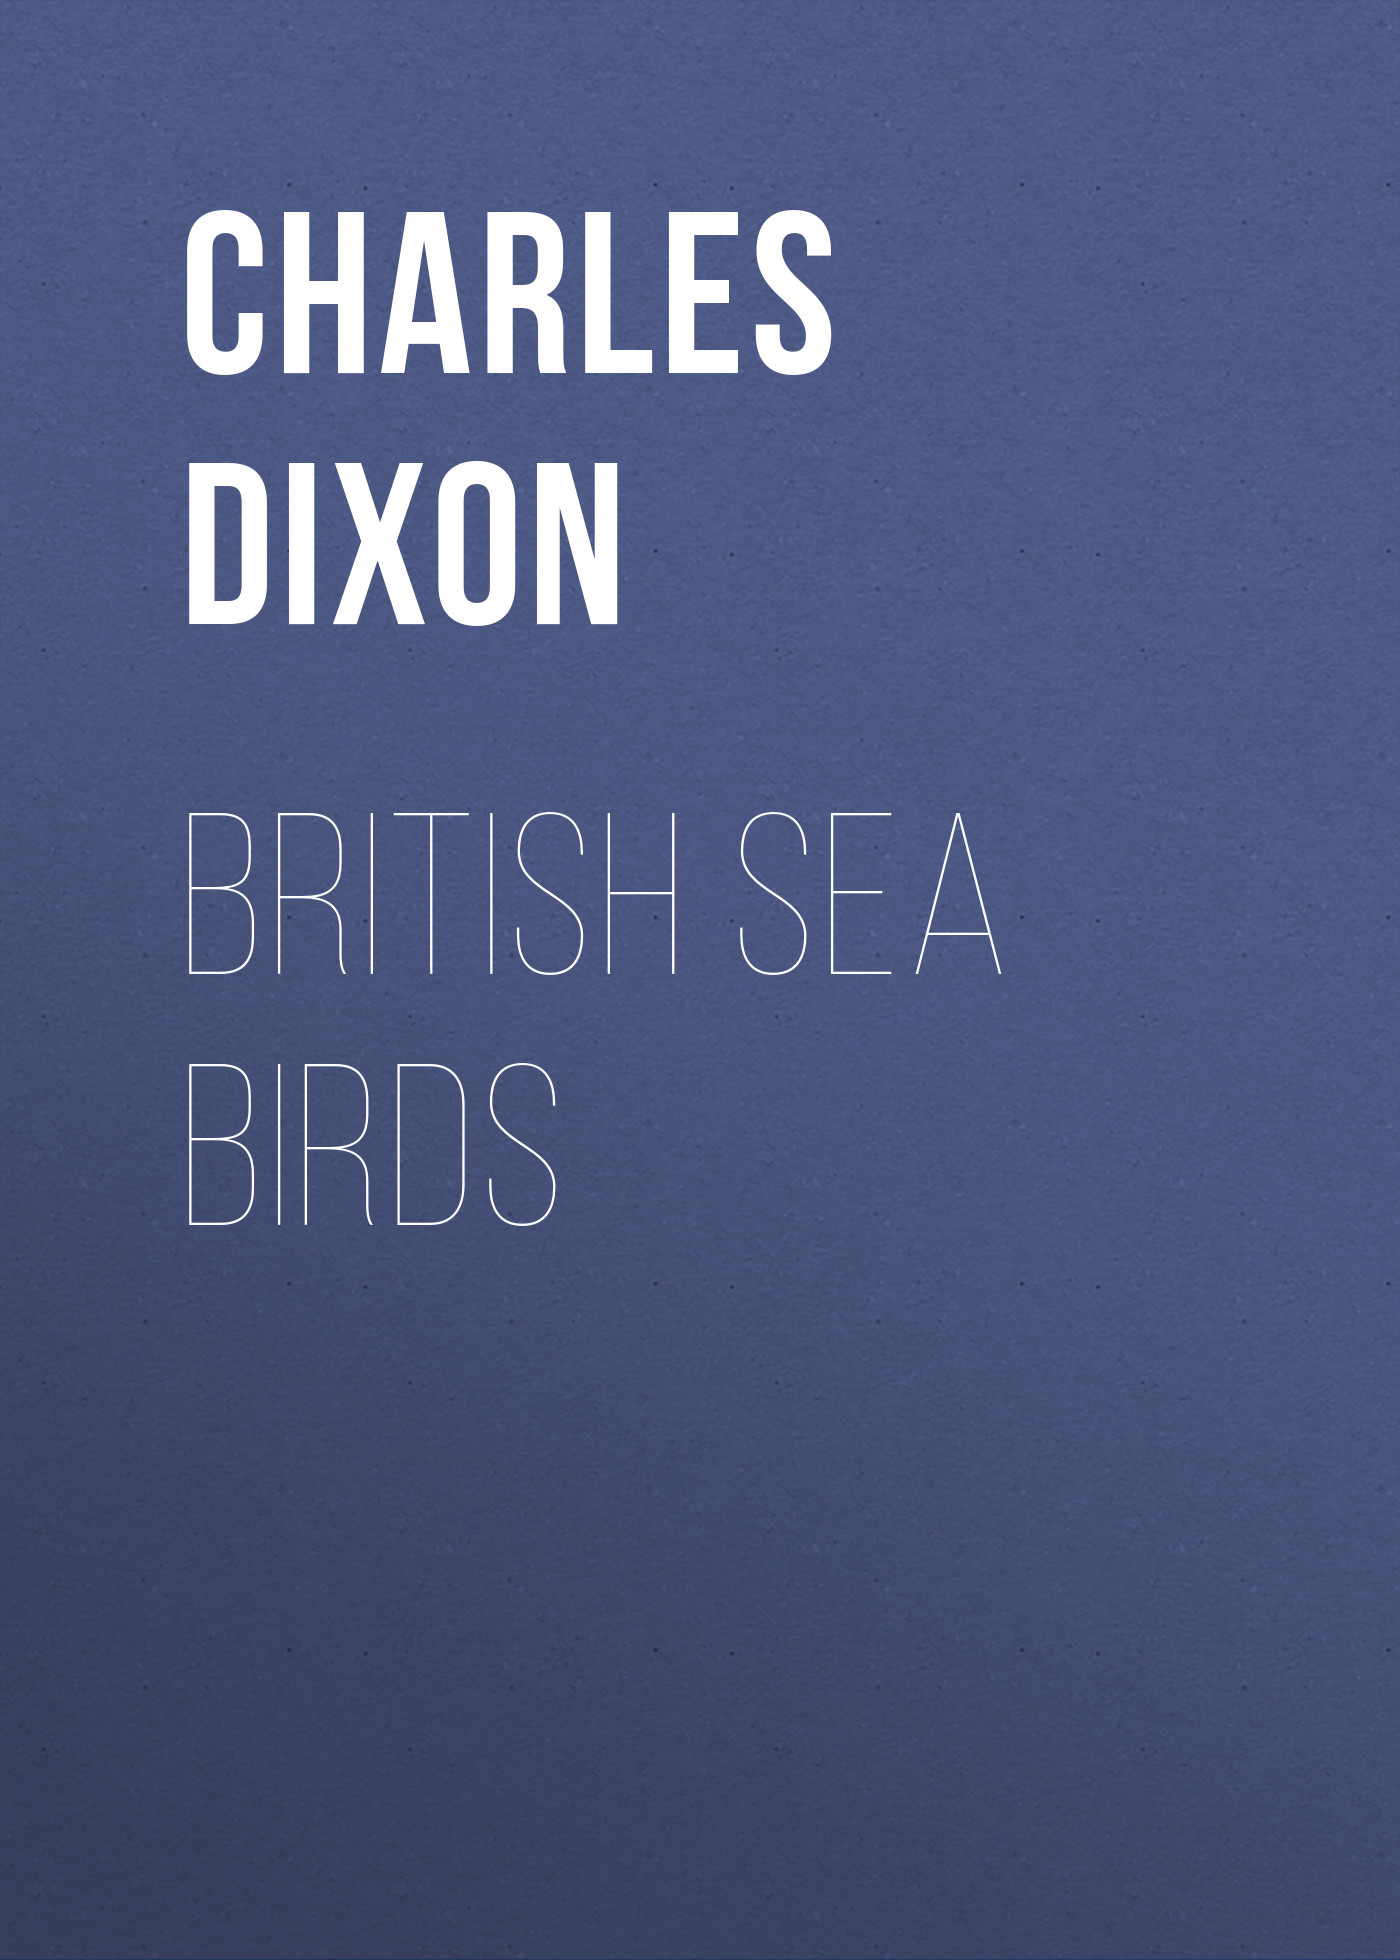 Книга British Sea Birds из серии , созданная Charles Dixon, может относится к жанру Зарубежная старинная литература, Зарубежная классика. Стоимость электронной книги British Sea Birds с идентификатором 24620733 составляет 0 руб.